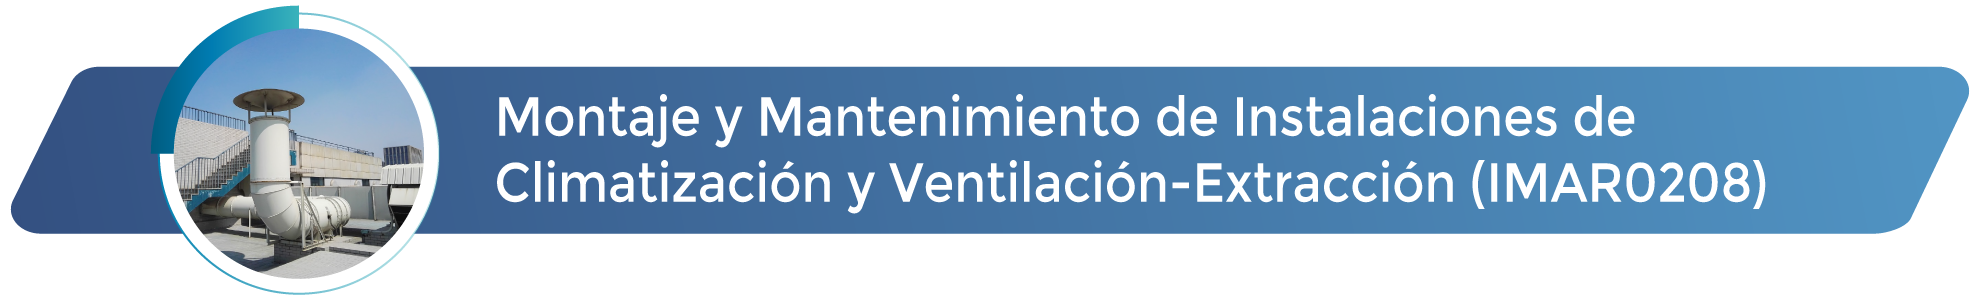 Montaje y Mantenimiento de Instalaciones de Climatización Ventilación-Extracción